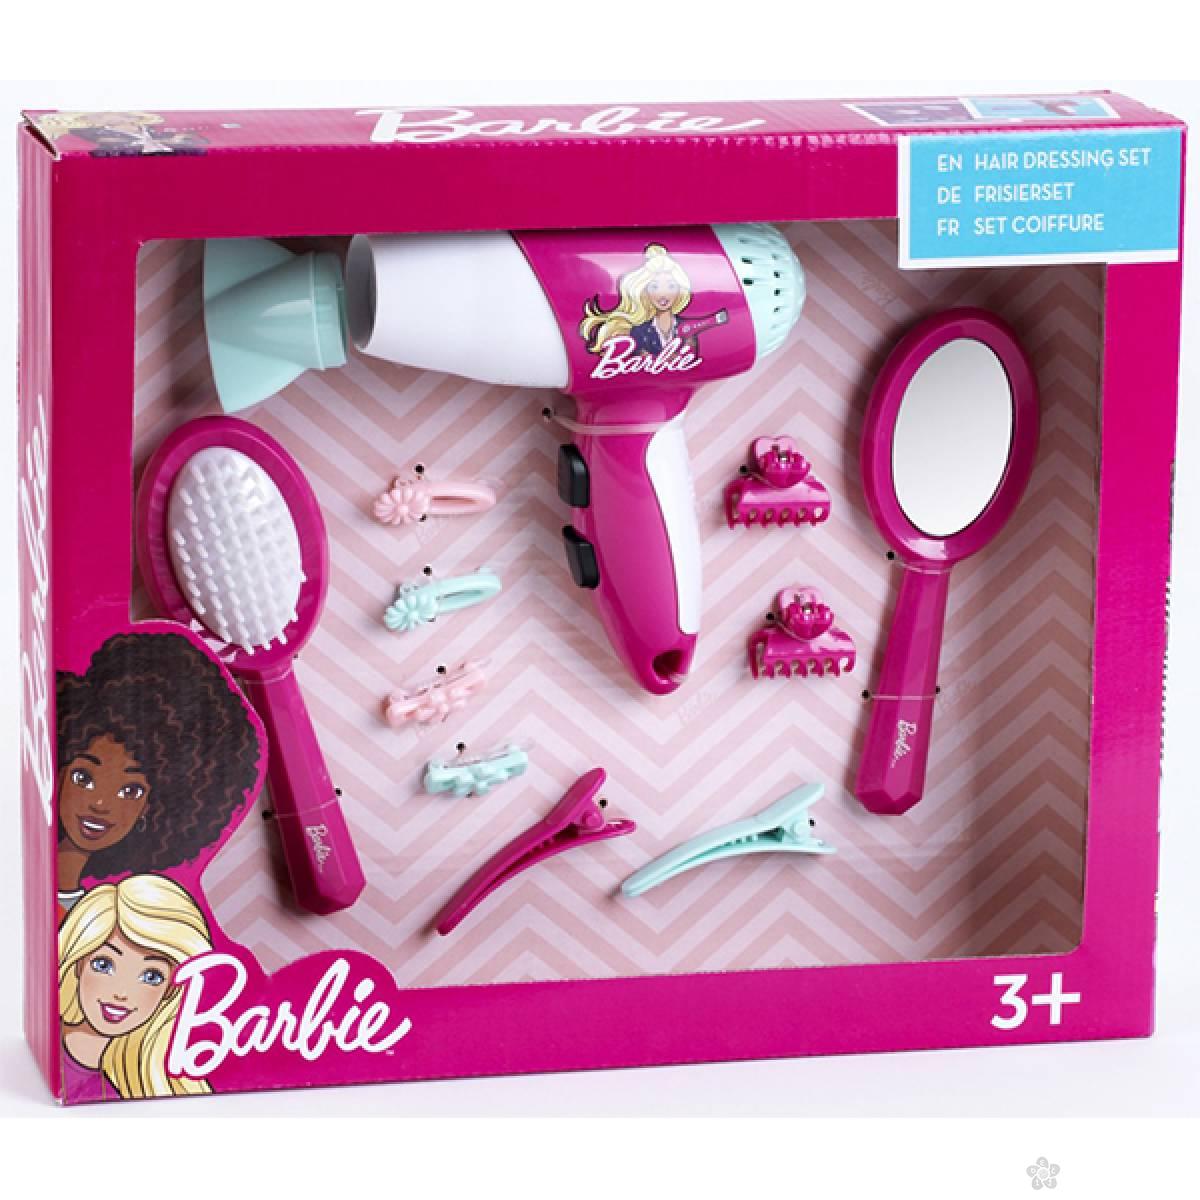 Barbie frizerski set sa fenom za kosu Klein KL5790 